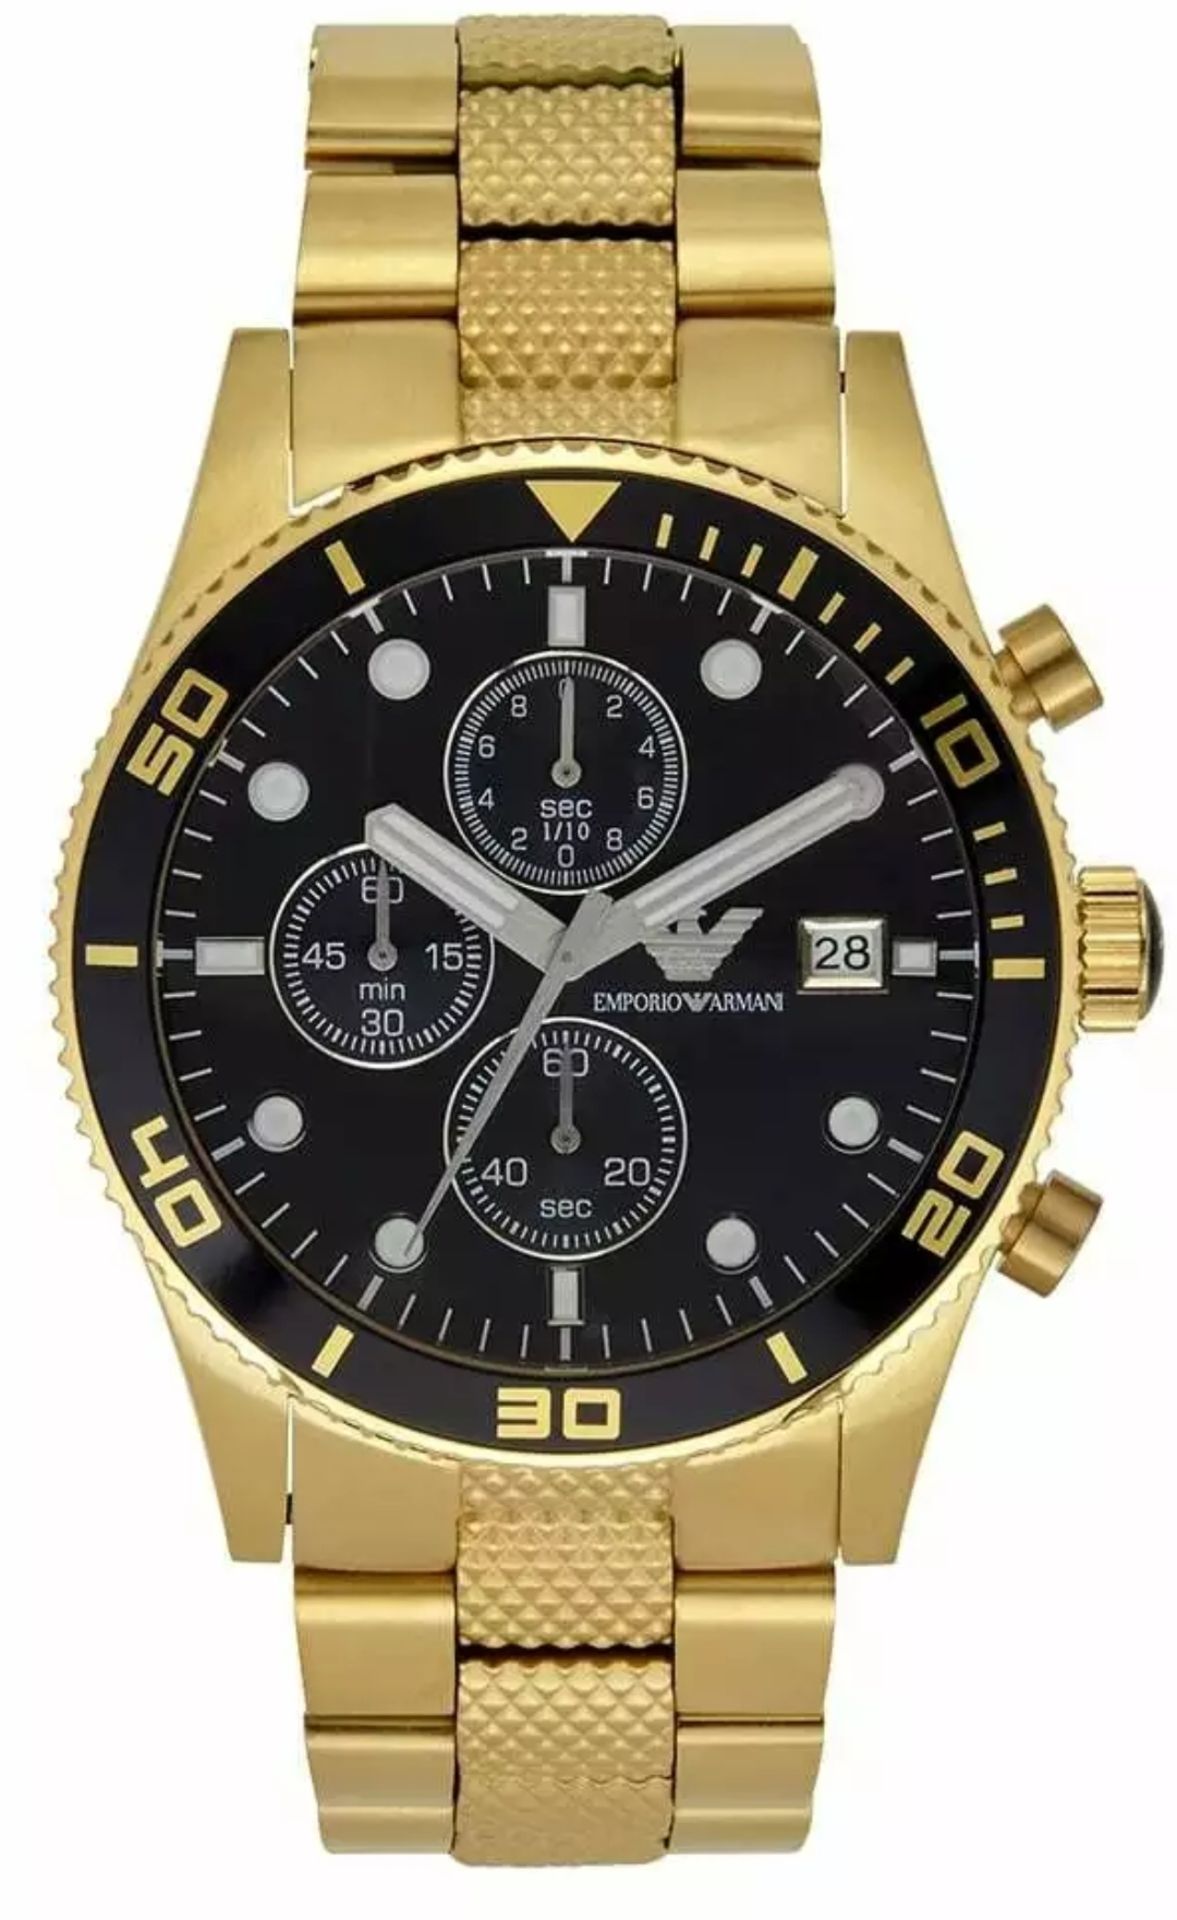 Emporio Armani AR5857 Black Dial Gold Tone Bracelet Quartz Chronograph Watch